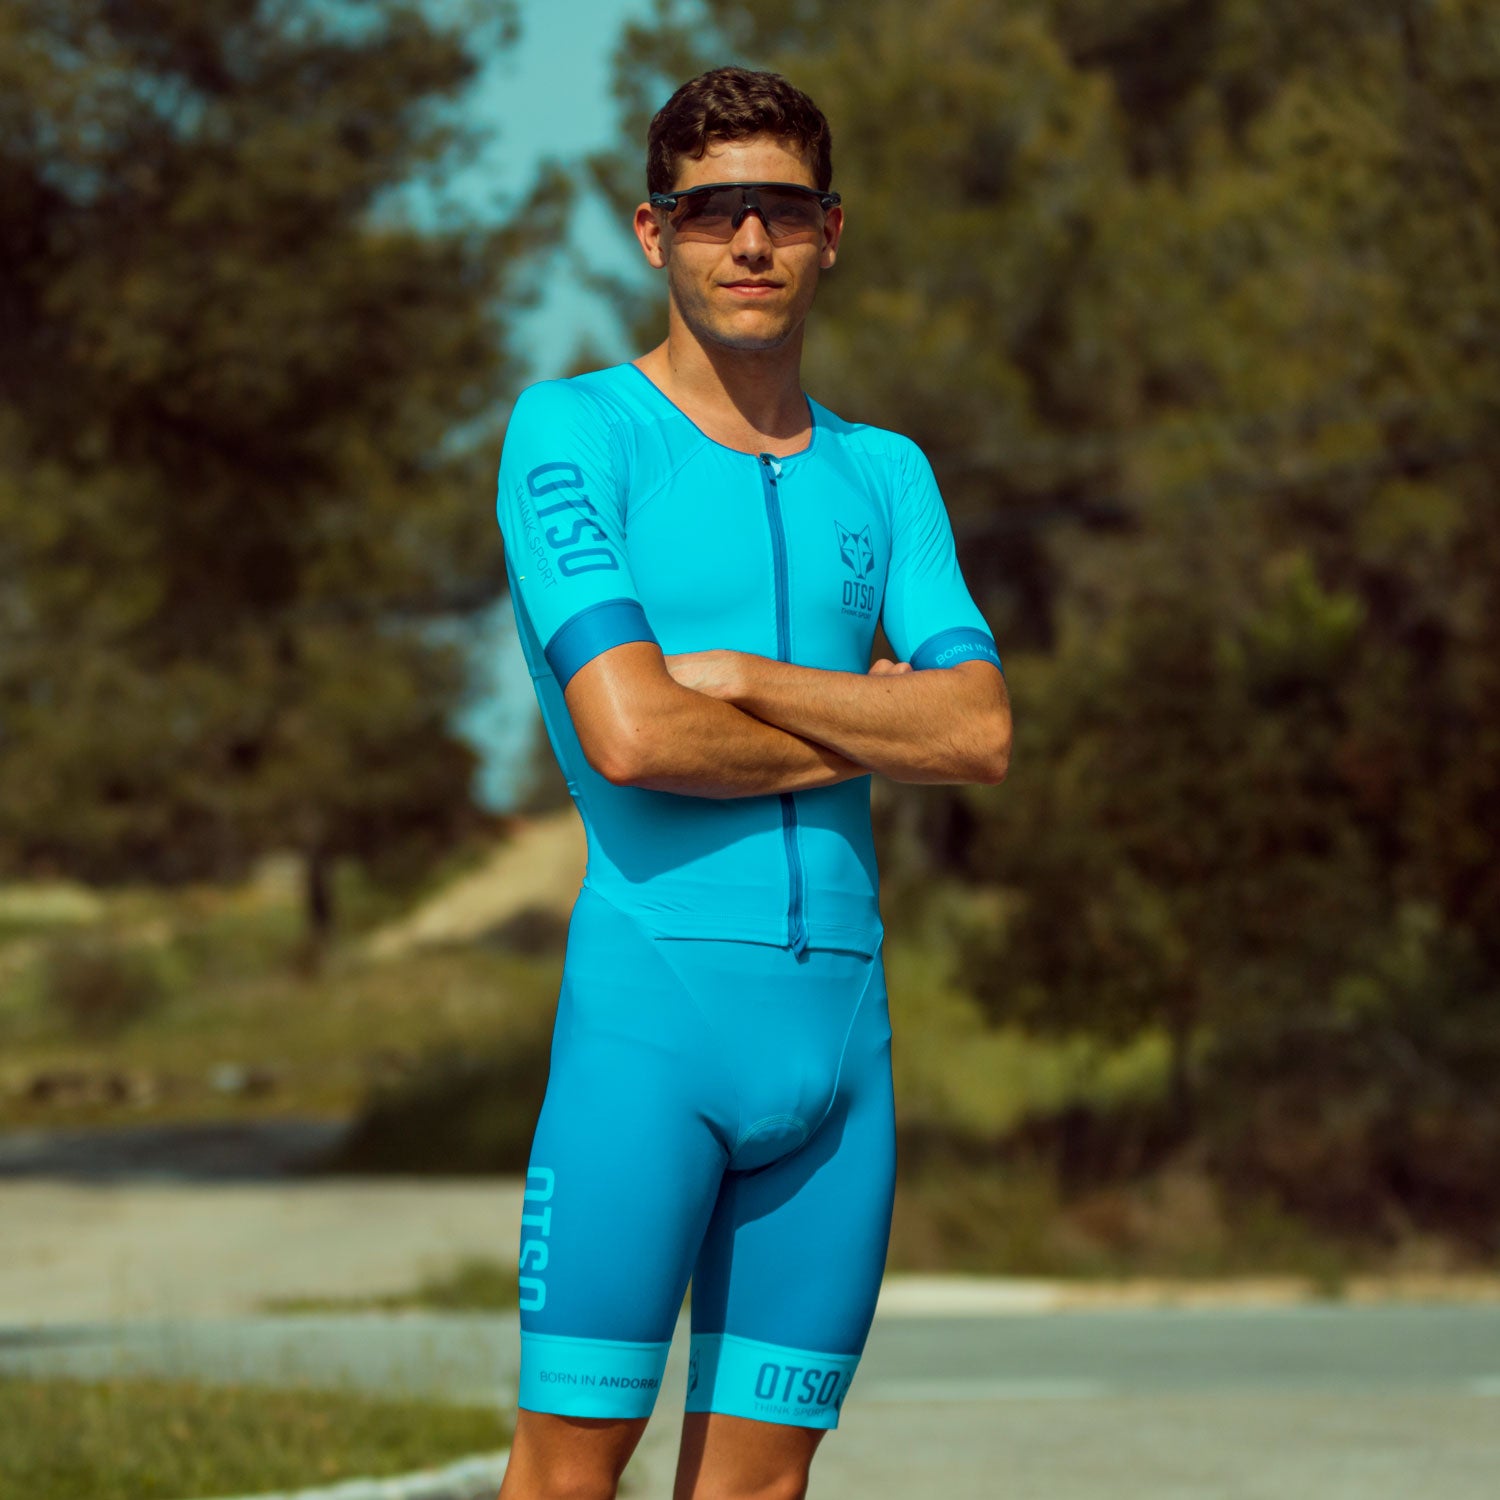 Men's Triathlon and Suits